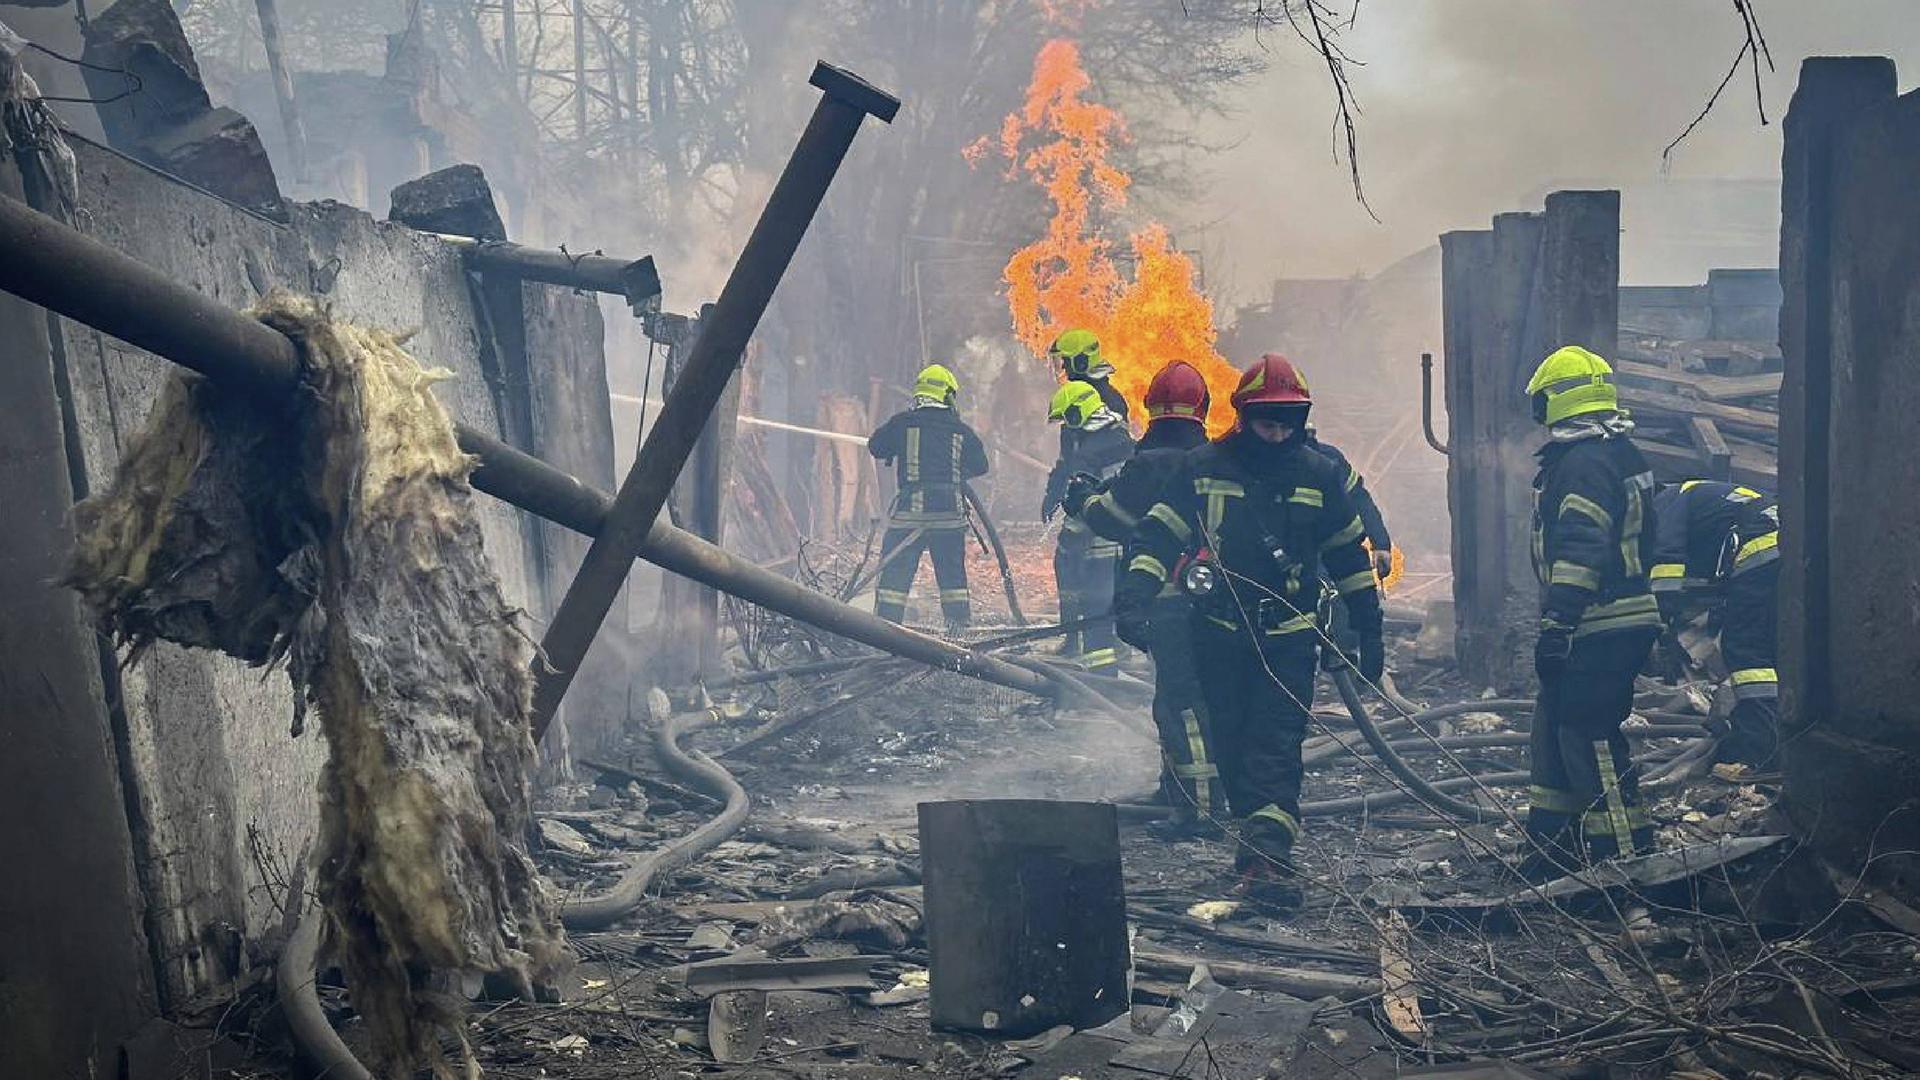 Feuerwehrmänner versuchen in einem völlig zerstörten Haus einen Brand zu löschen.